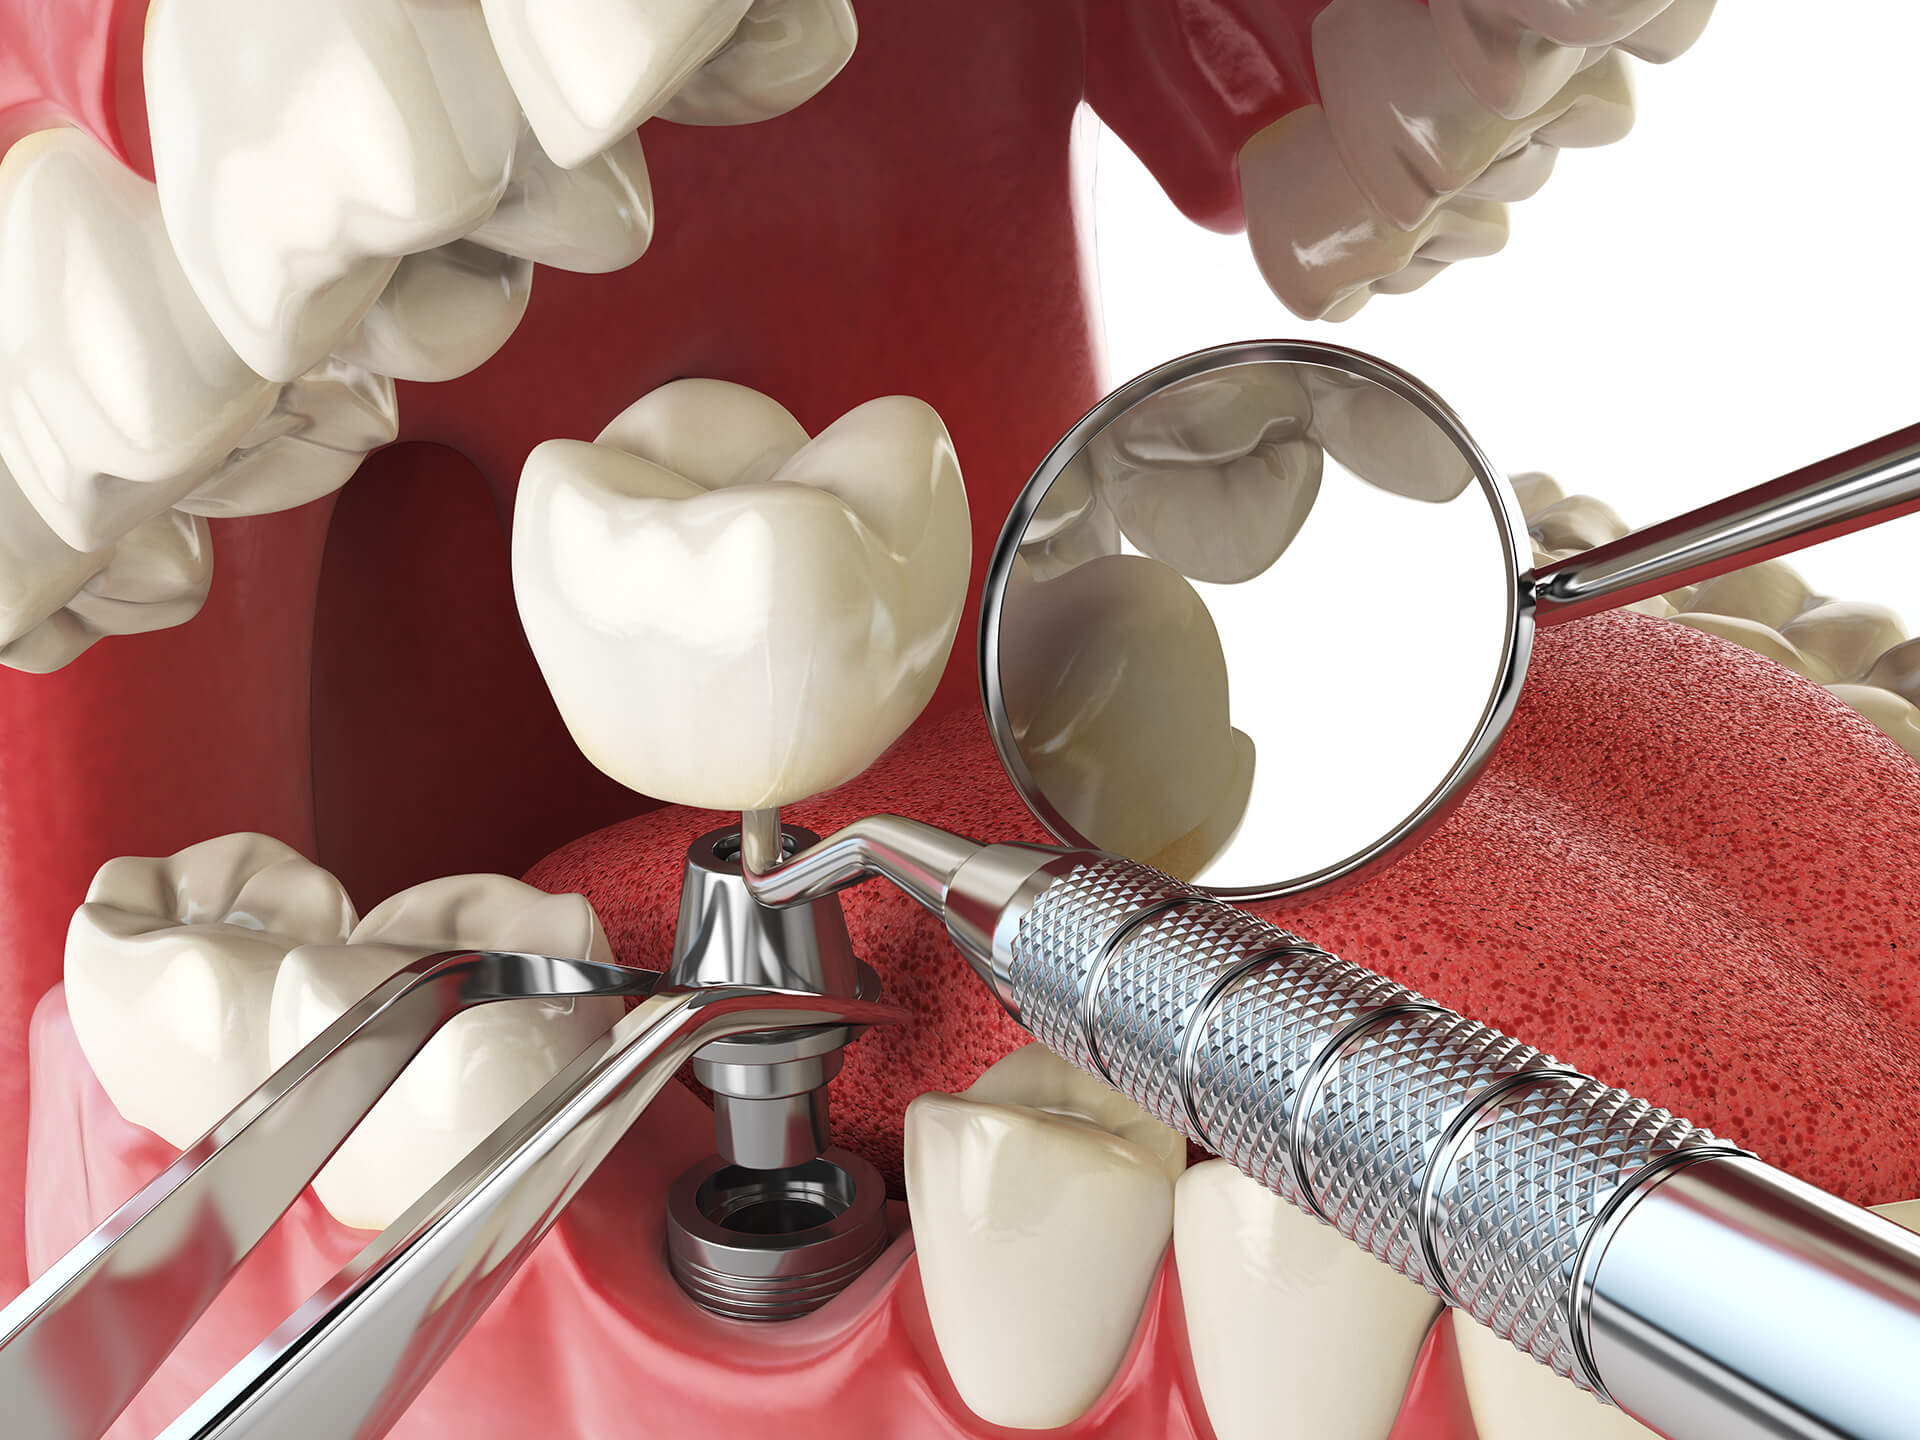  Implant Dental d'última generació